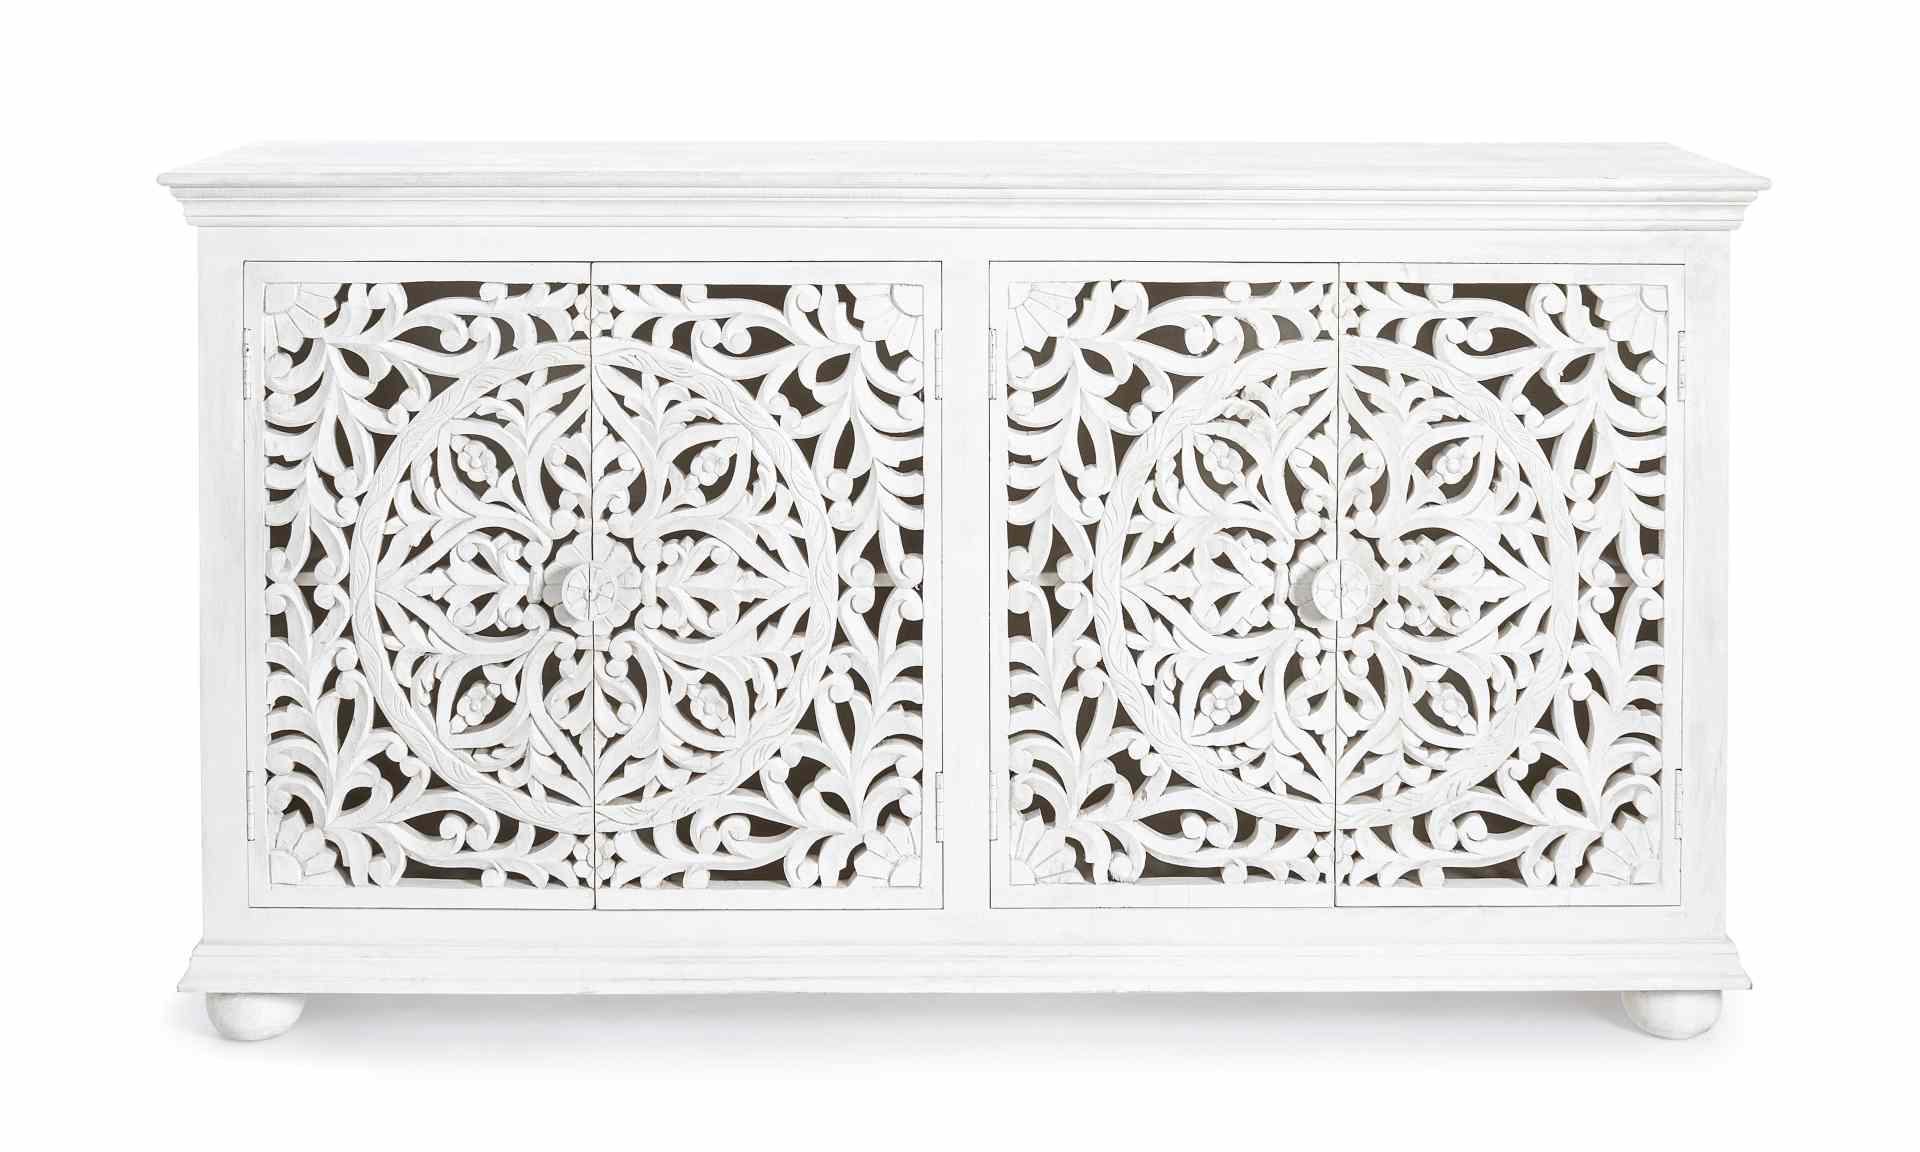 Das Sideboard Alina überzeugt mit seinem klassischen Design. Gefertigt wurde es aus Mango-Holz, welches einen weißen Farbton besitzt. Das Gestell ist auch aus Mango-Holz. Das Sideboard verfügt über vier Türen. Die Breite beträgt 178 cm.